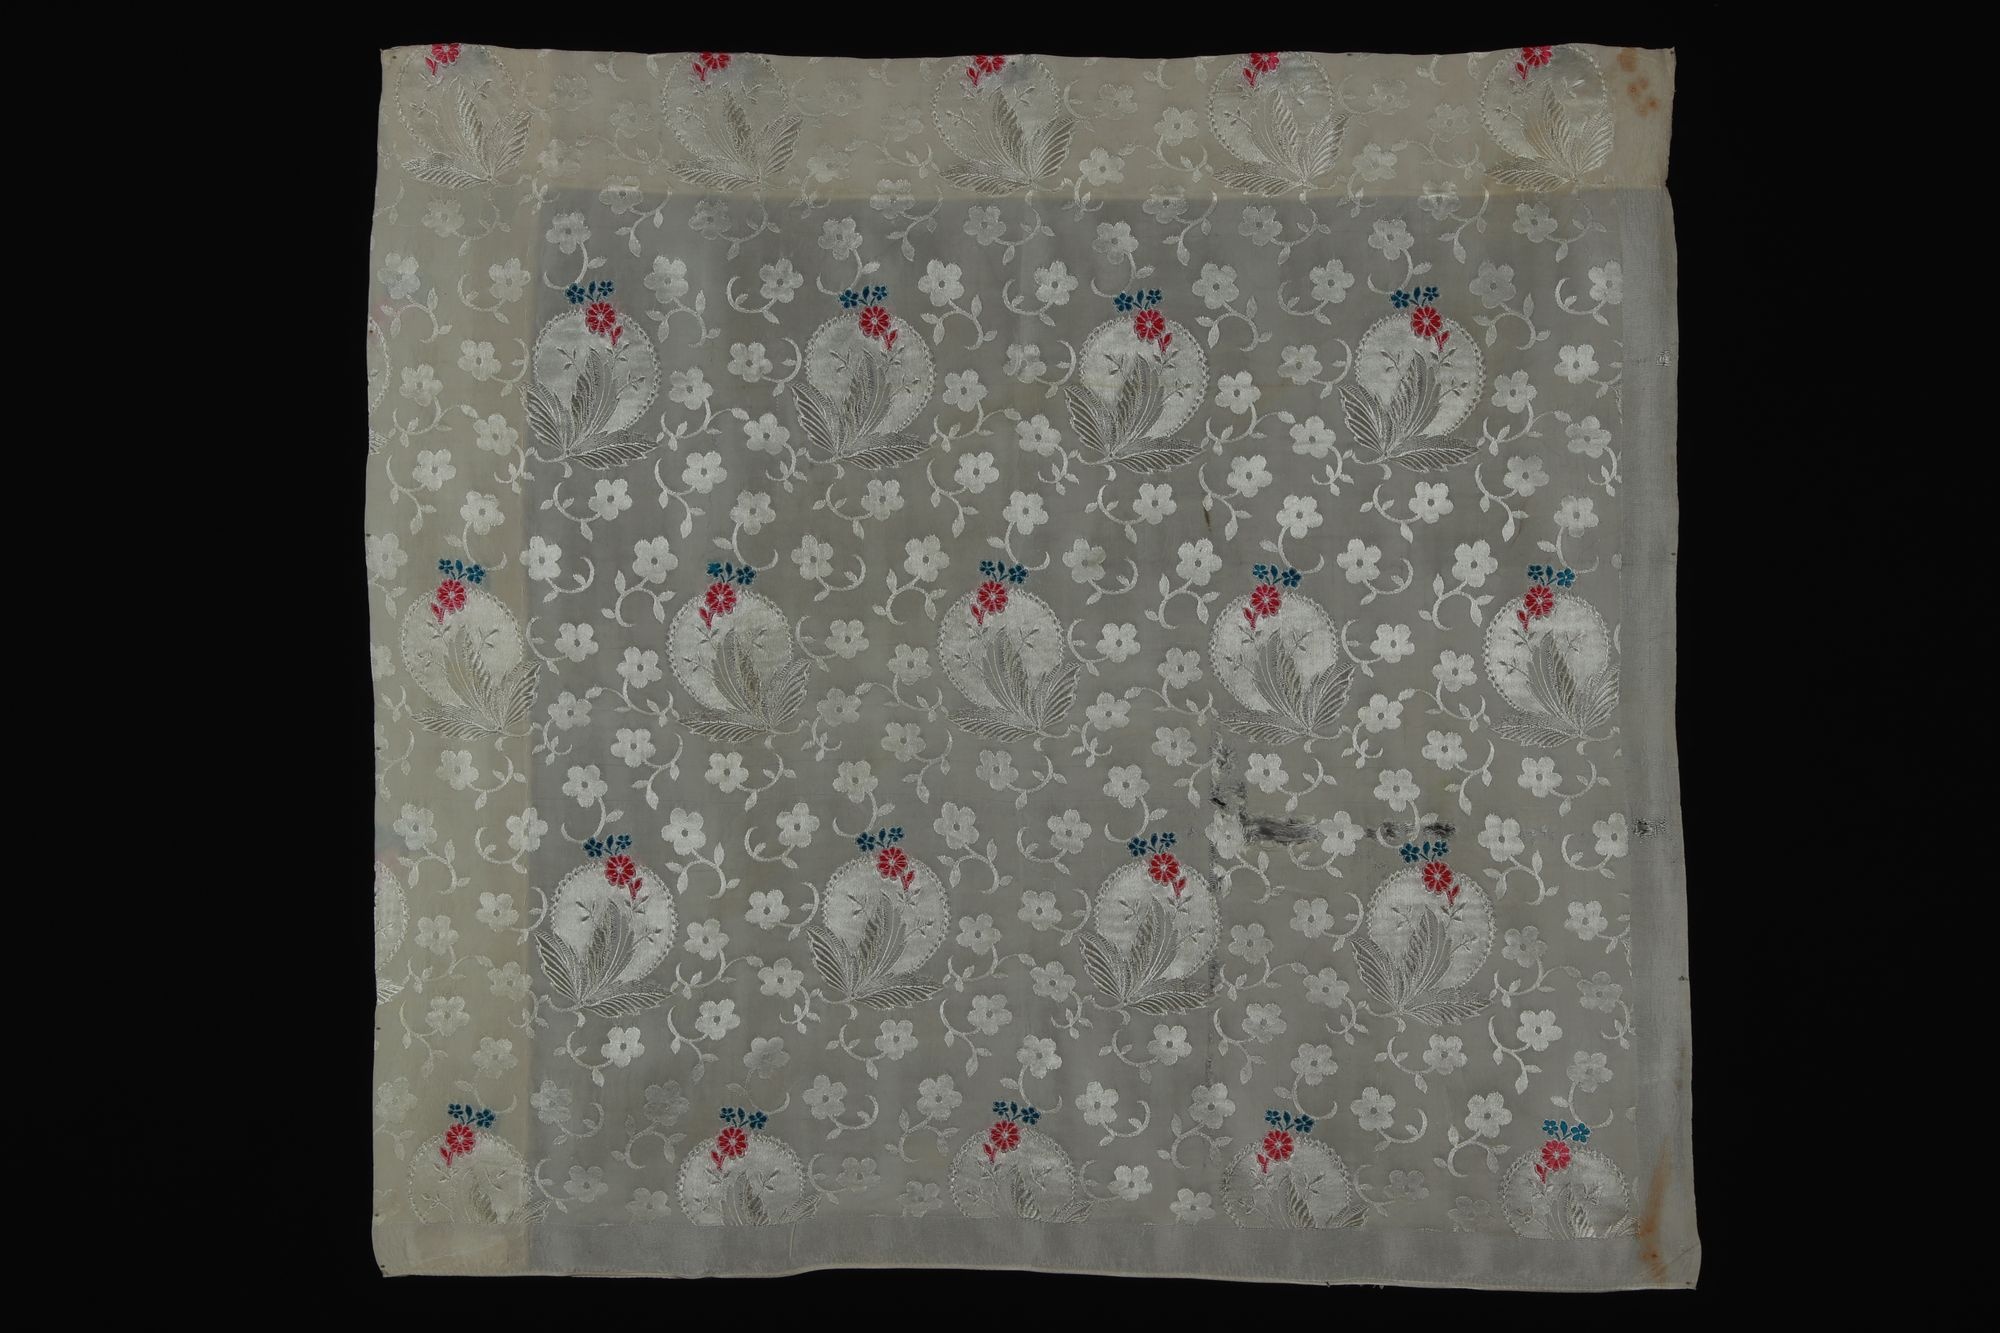 selyemkendő "selemkendő" (Rippl-Rónai Múzeum CC BY-NC-SA)